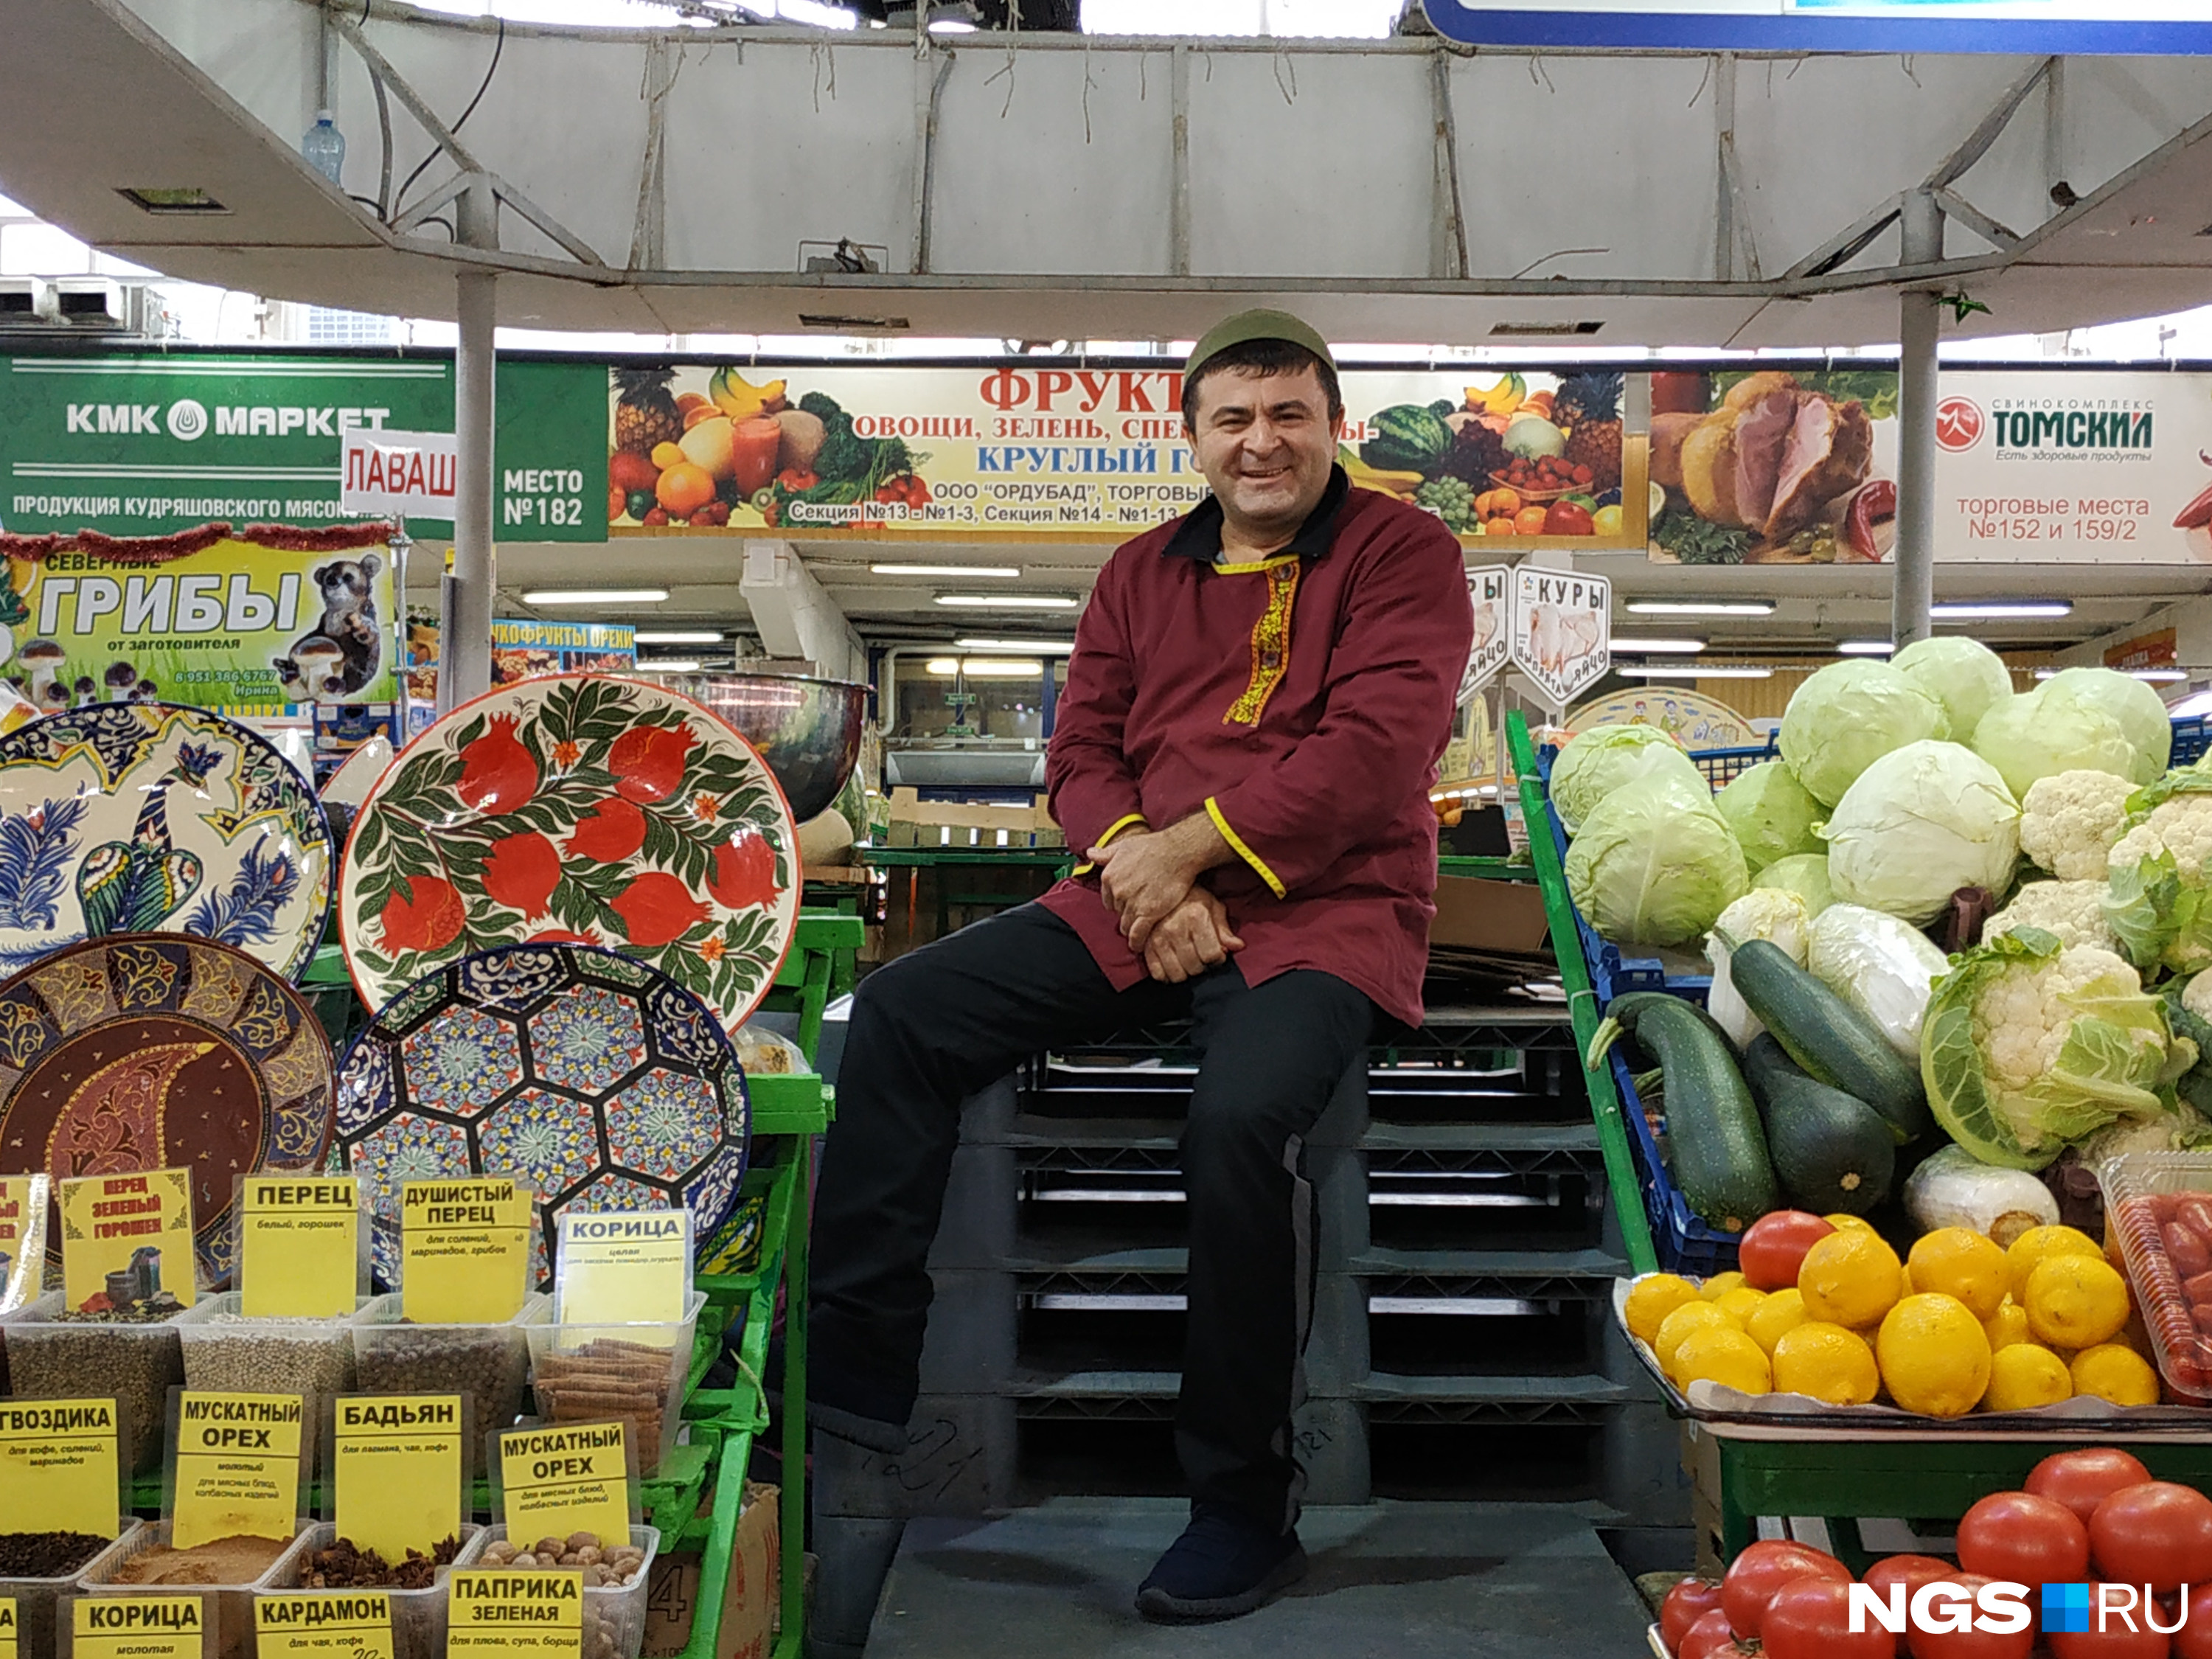 Продавец фруктов Алишер «рекламной акцией» остался доволен